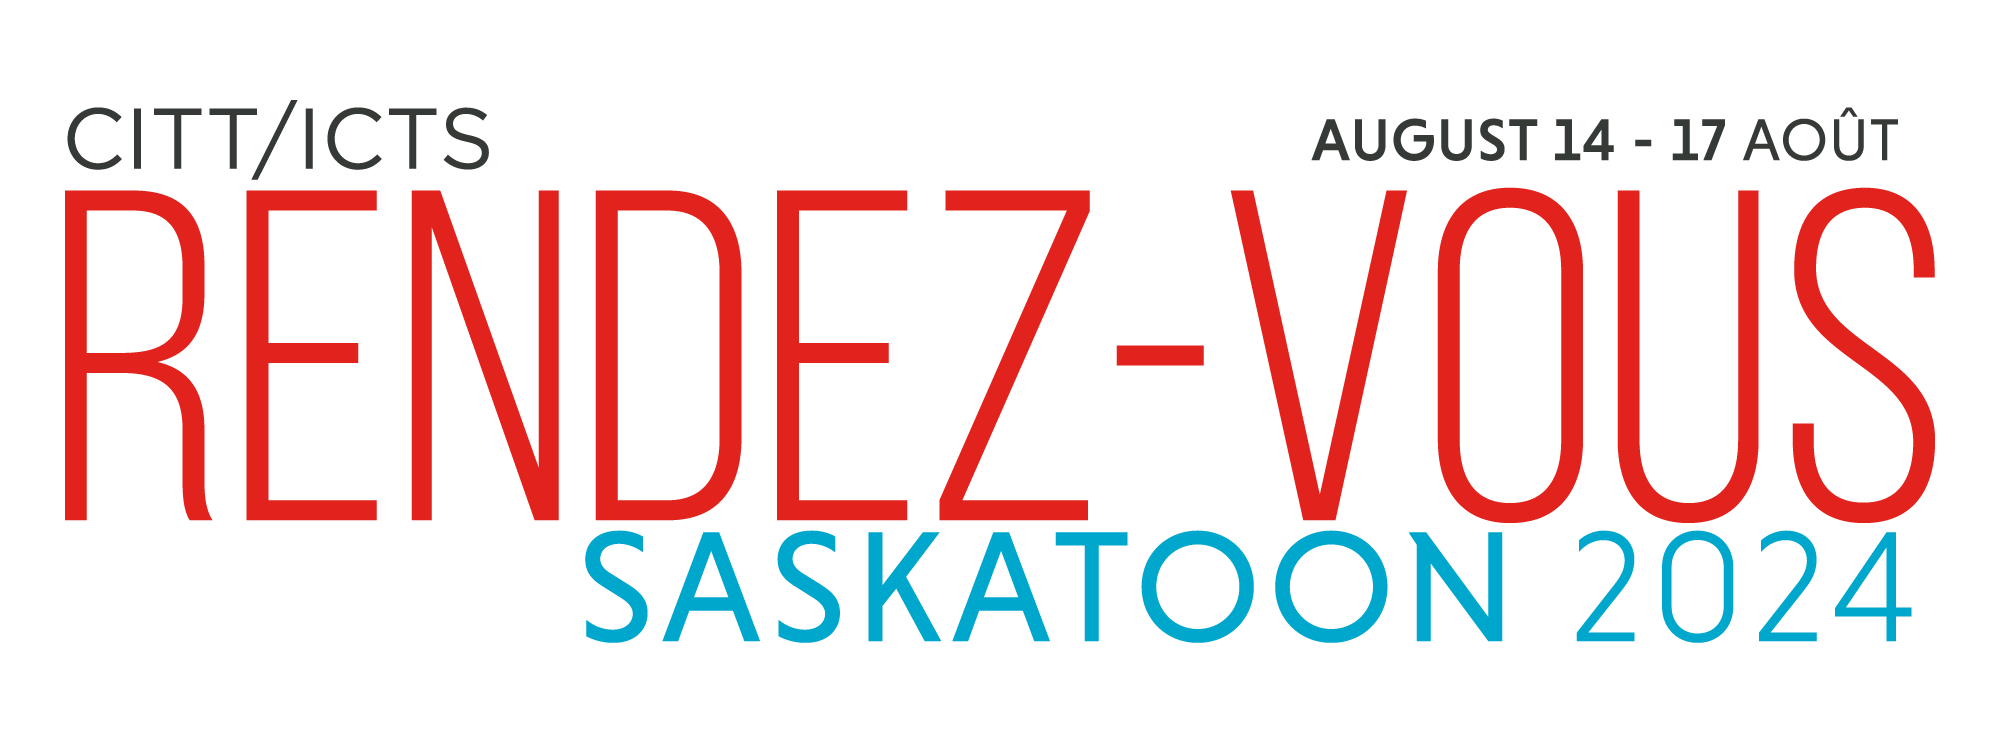 Rendez-vous_2024_-_Saskatoon/RV2024_logo-color_with_dates_2x.png